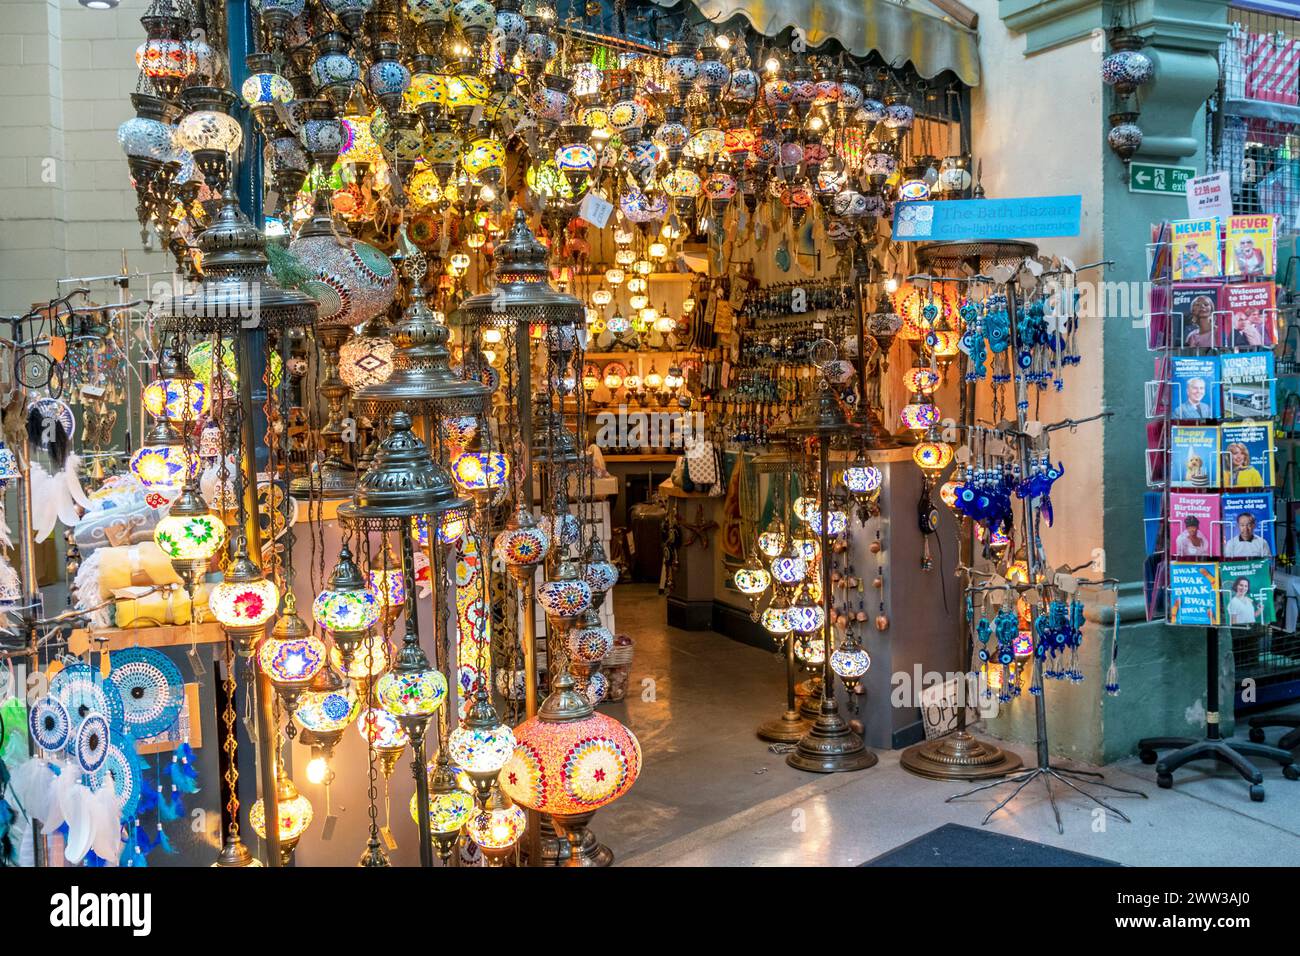 Une boutique de lanterne colorée éclairée avec les marchandises en vente Banque D'Images